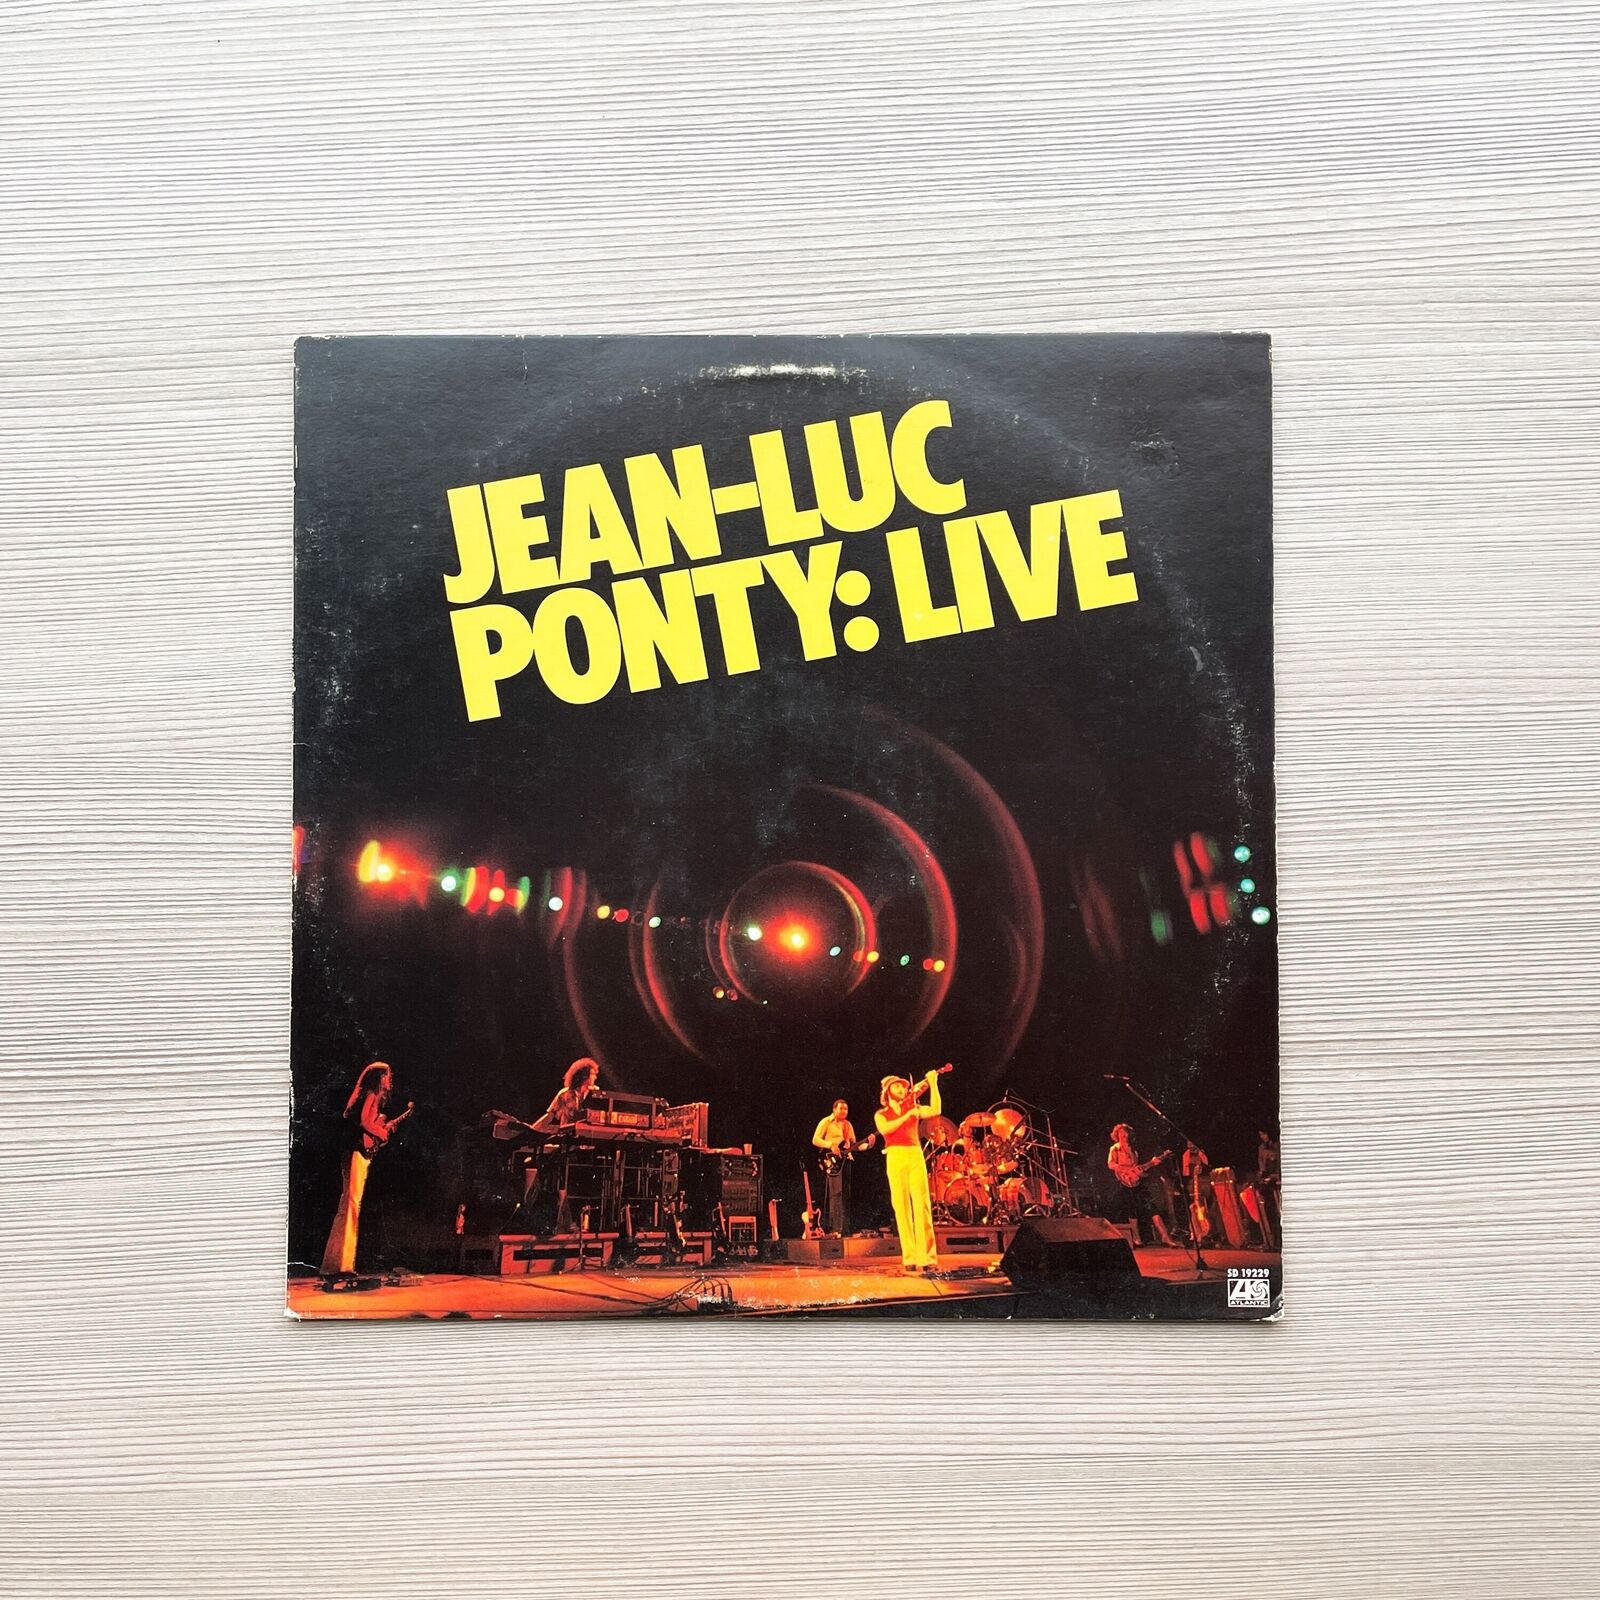 Jean-Luc Ponty Live - Vinyl LP Record - 1979